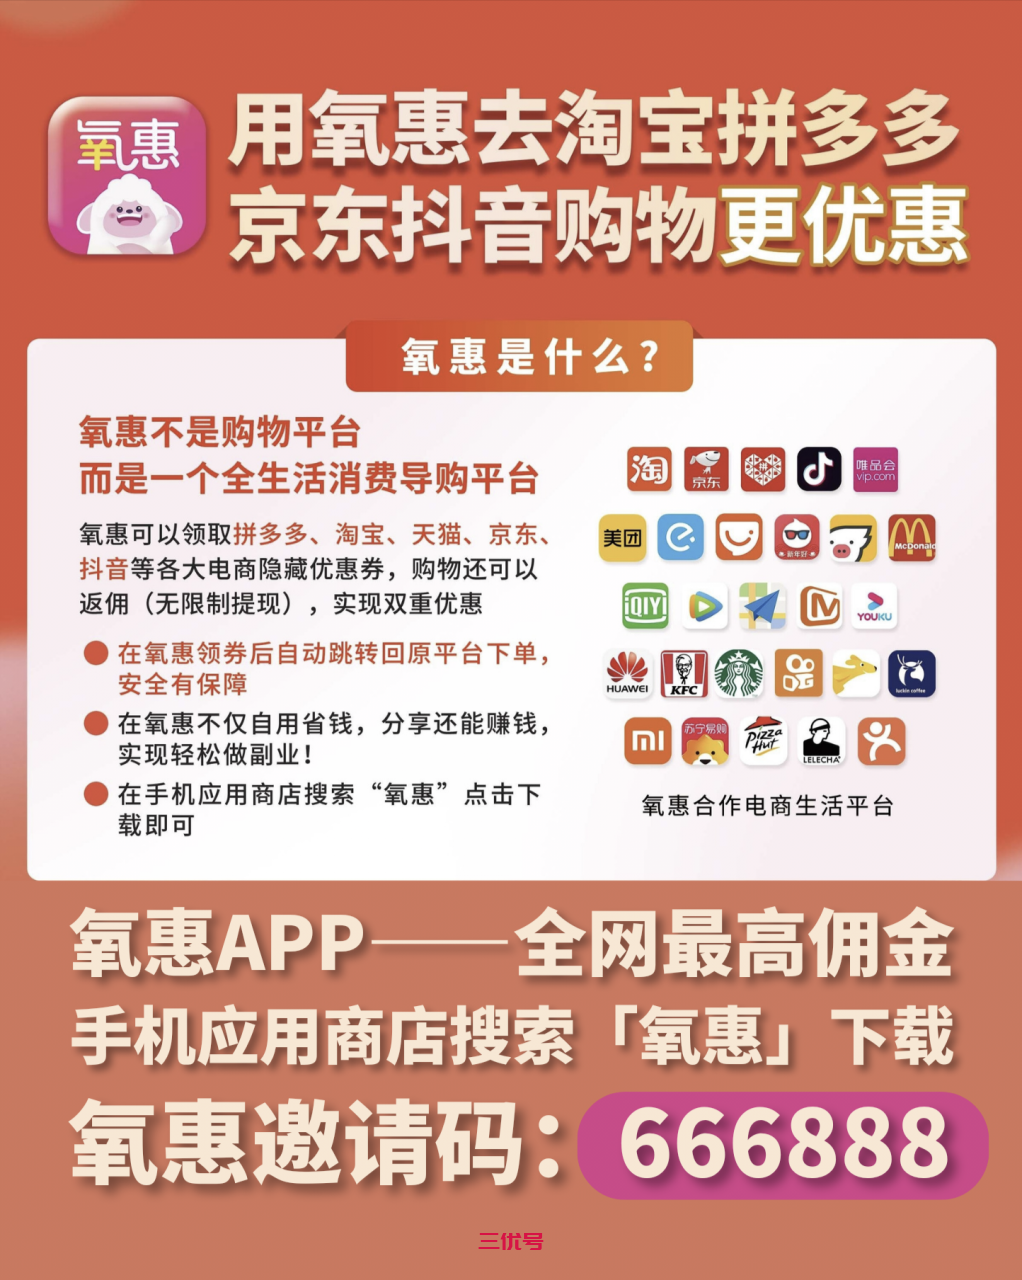 京东返利app哪个最好 京东的官方返利app叫什么 项目资讯 第2张